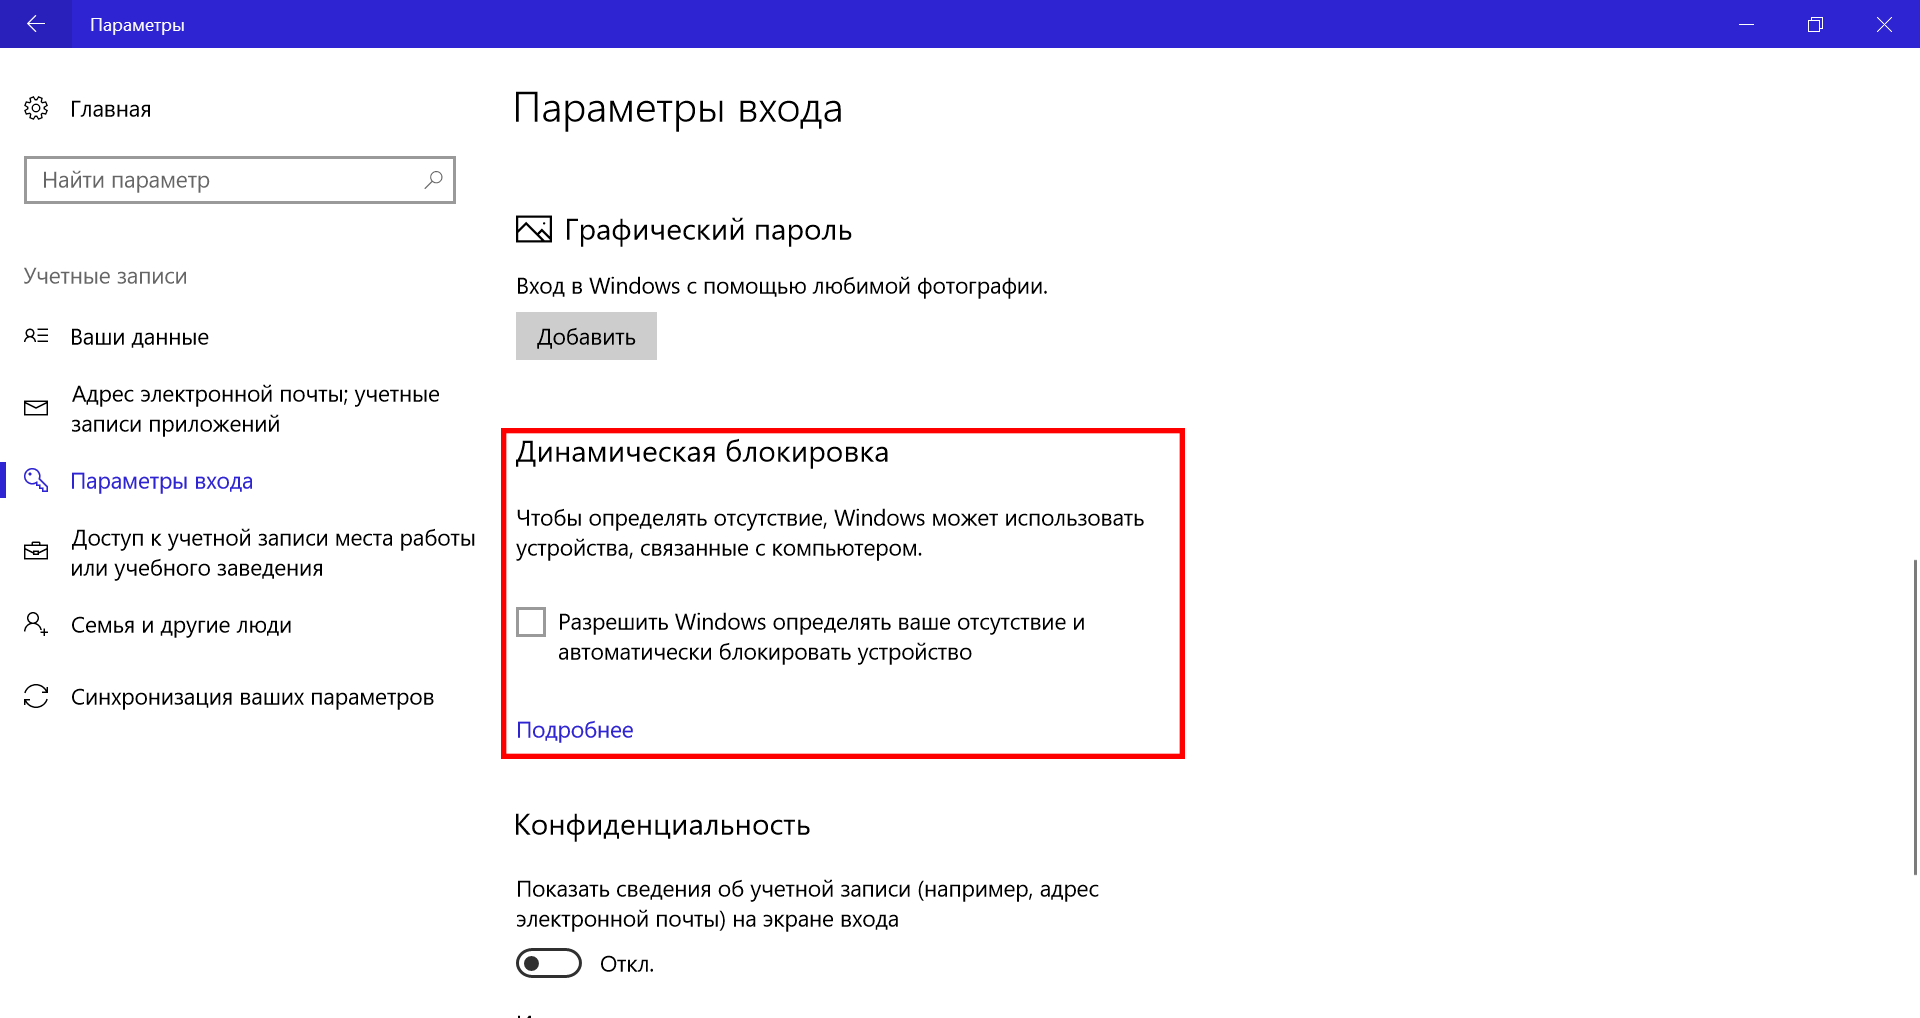 Как заблокировать компьютер на пароль; заблокировать вход компьютер хакеров; программное обеспечение